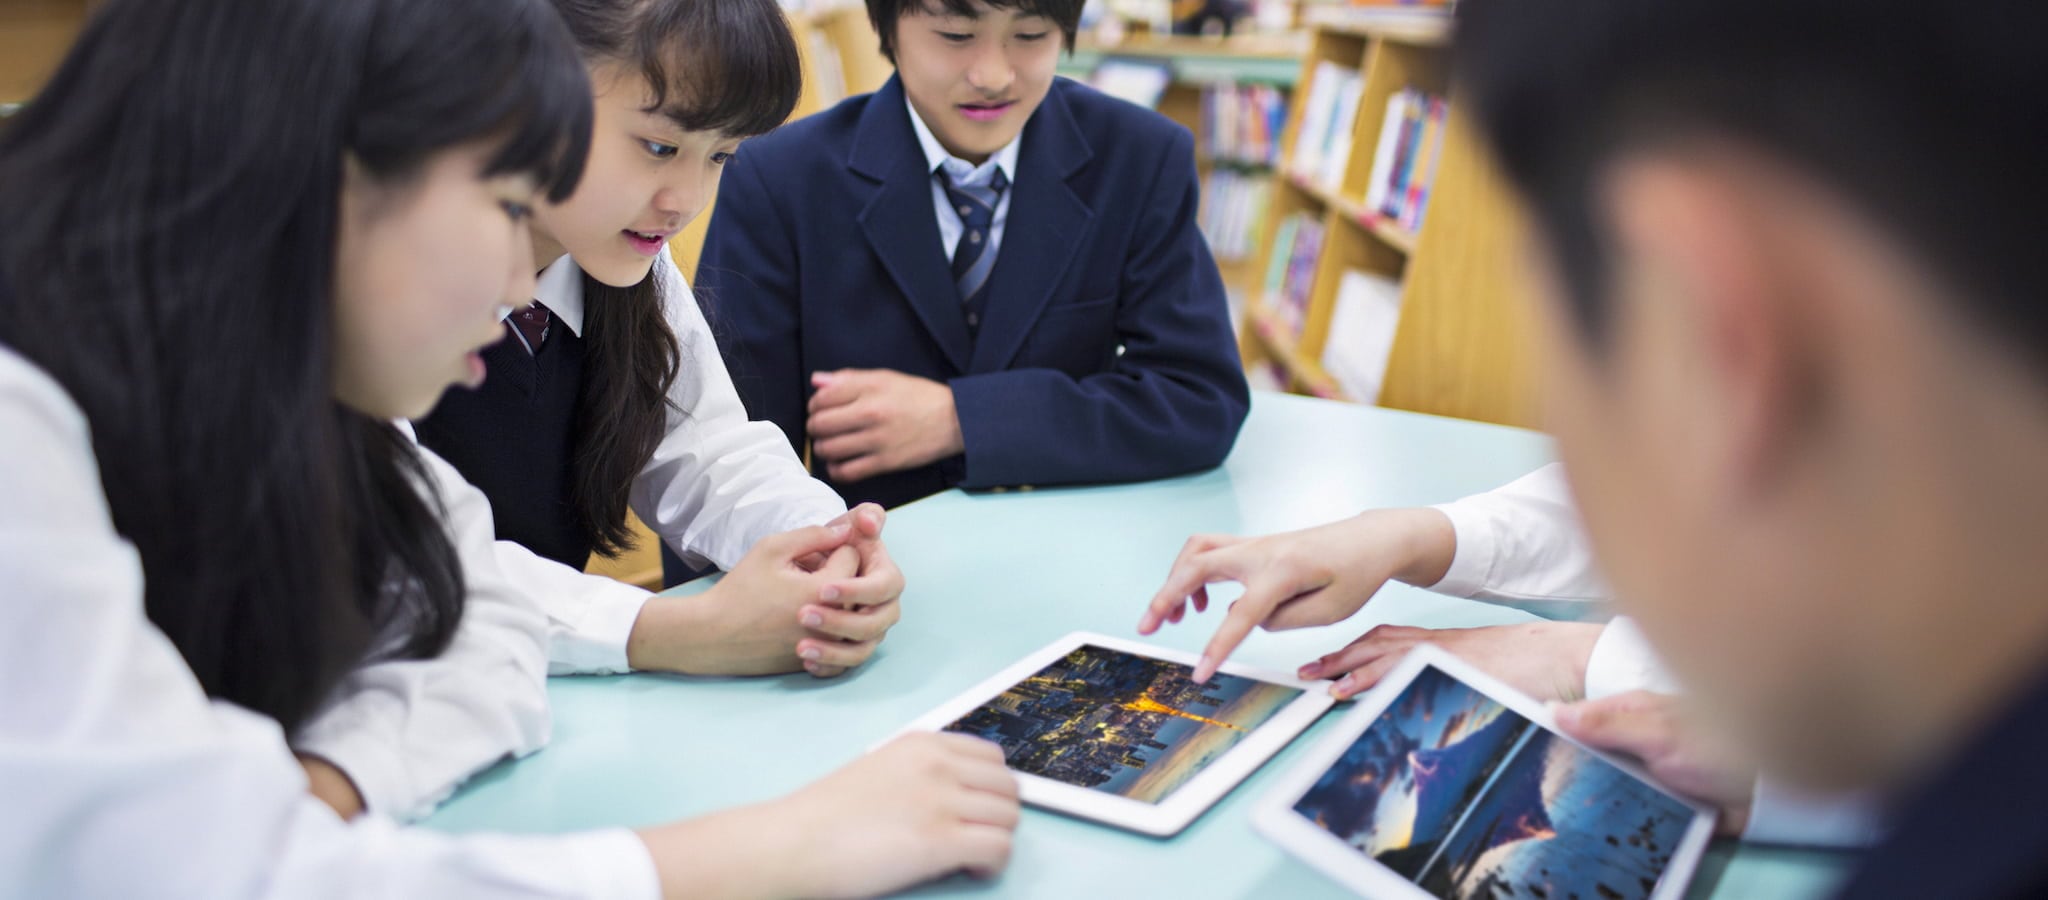 鎌倉市が市内の小中学校にiPadを導入したワケ